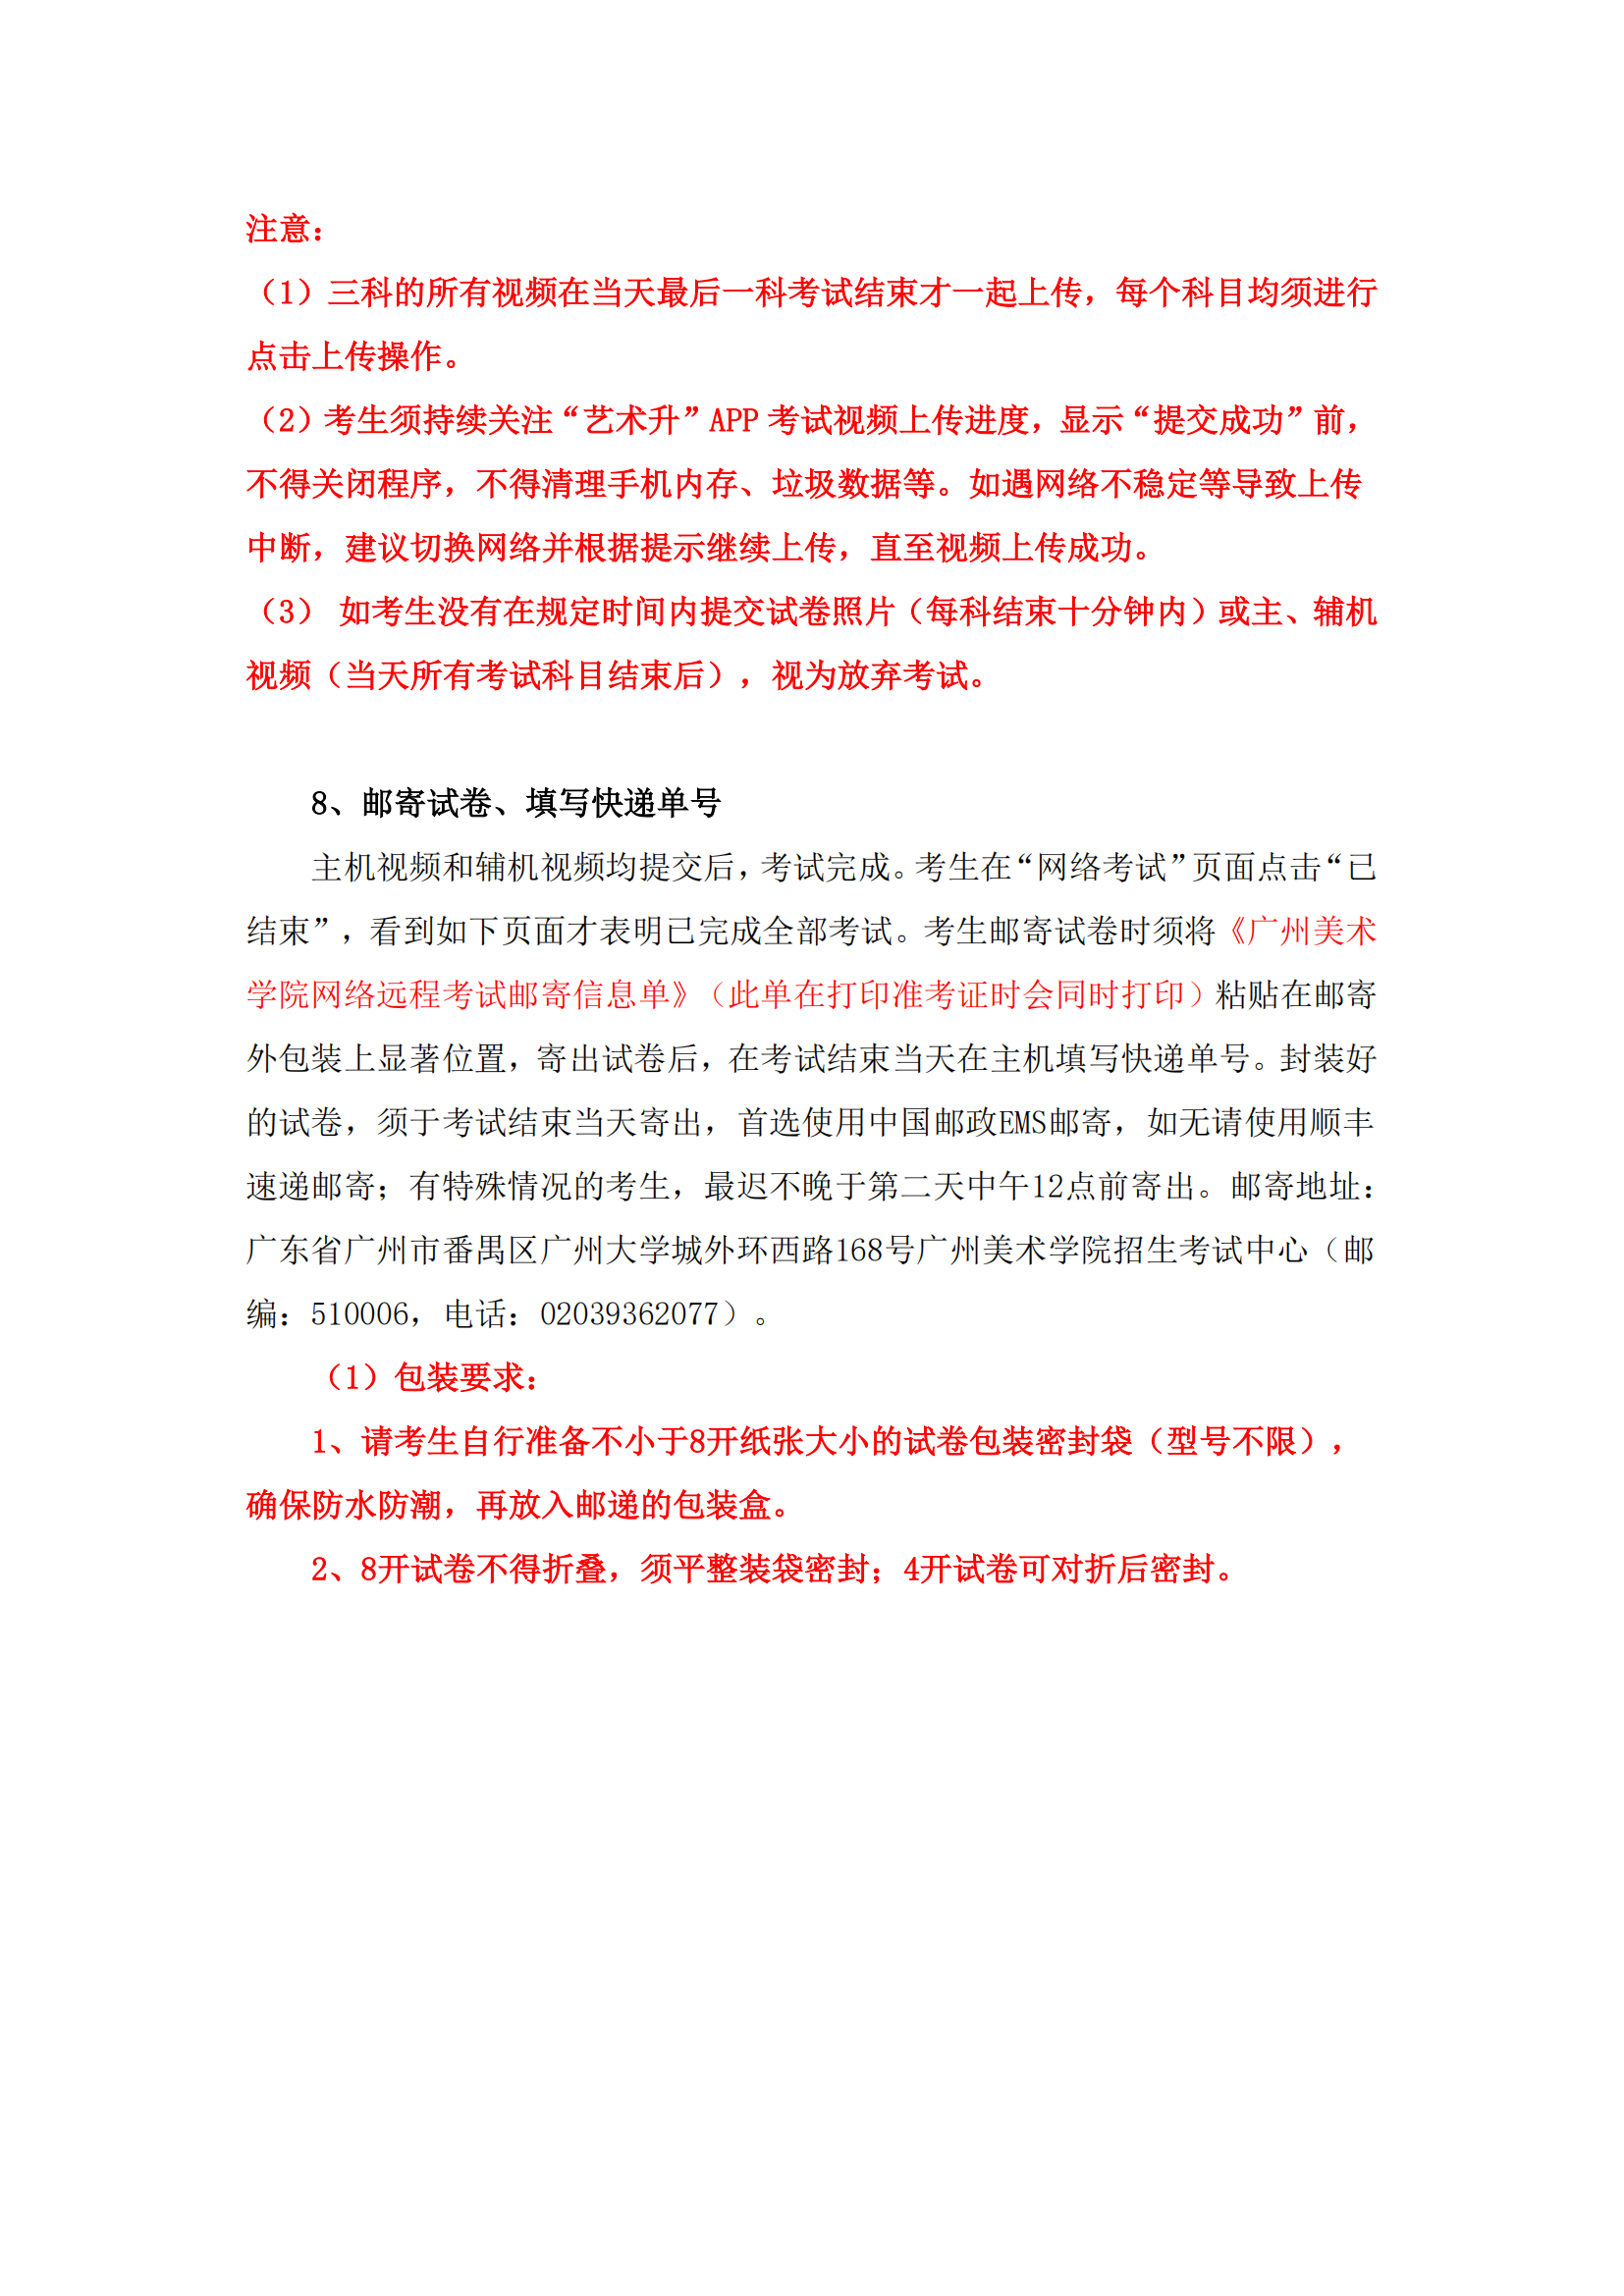 附件1：广州美术学院艺术升APP网络考试操作说明_13.png